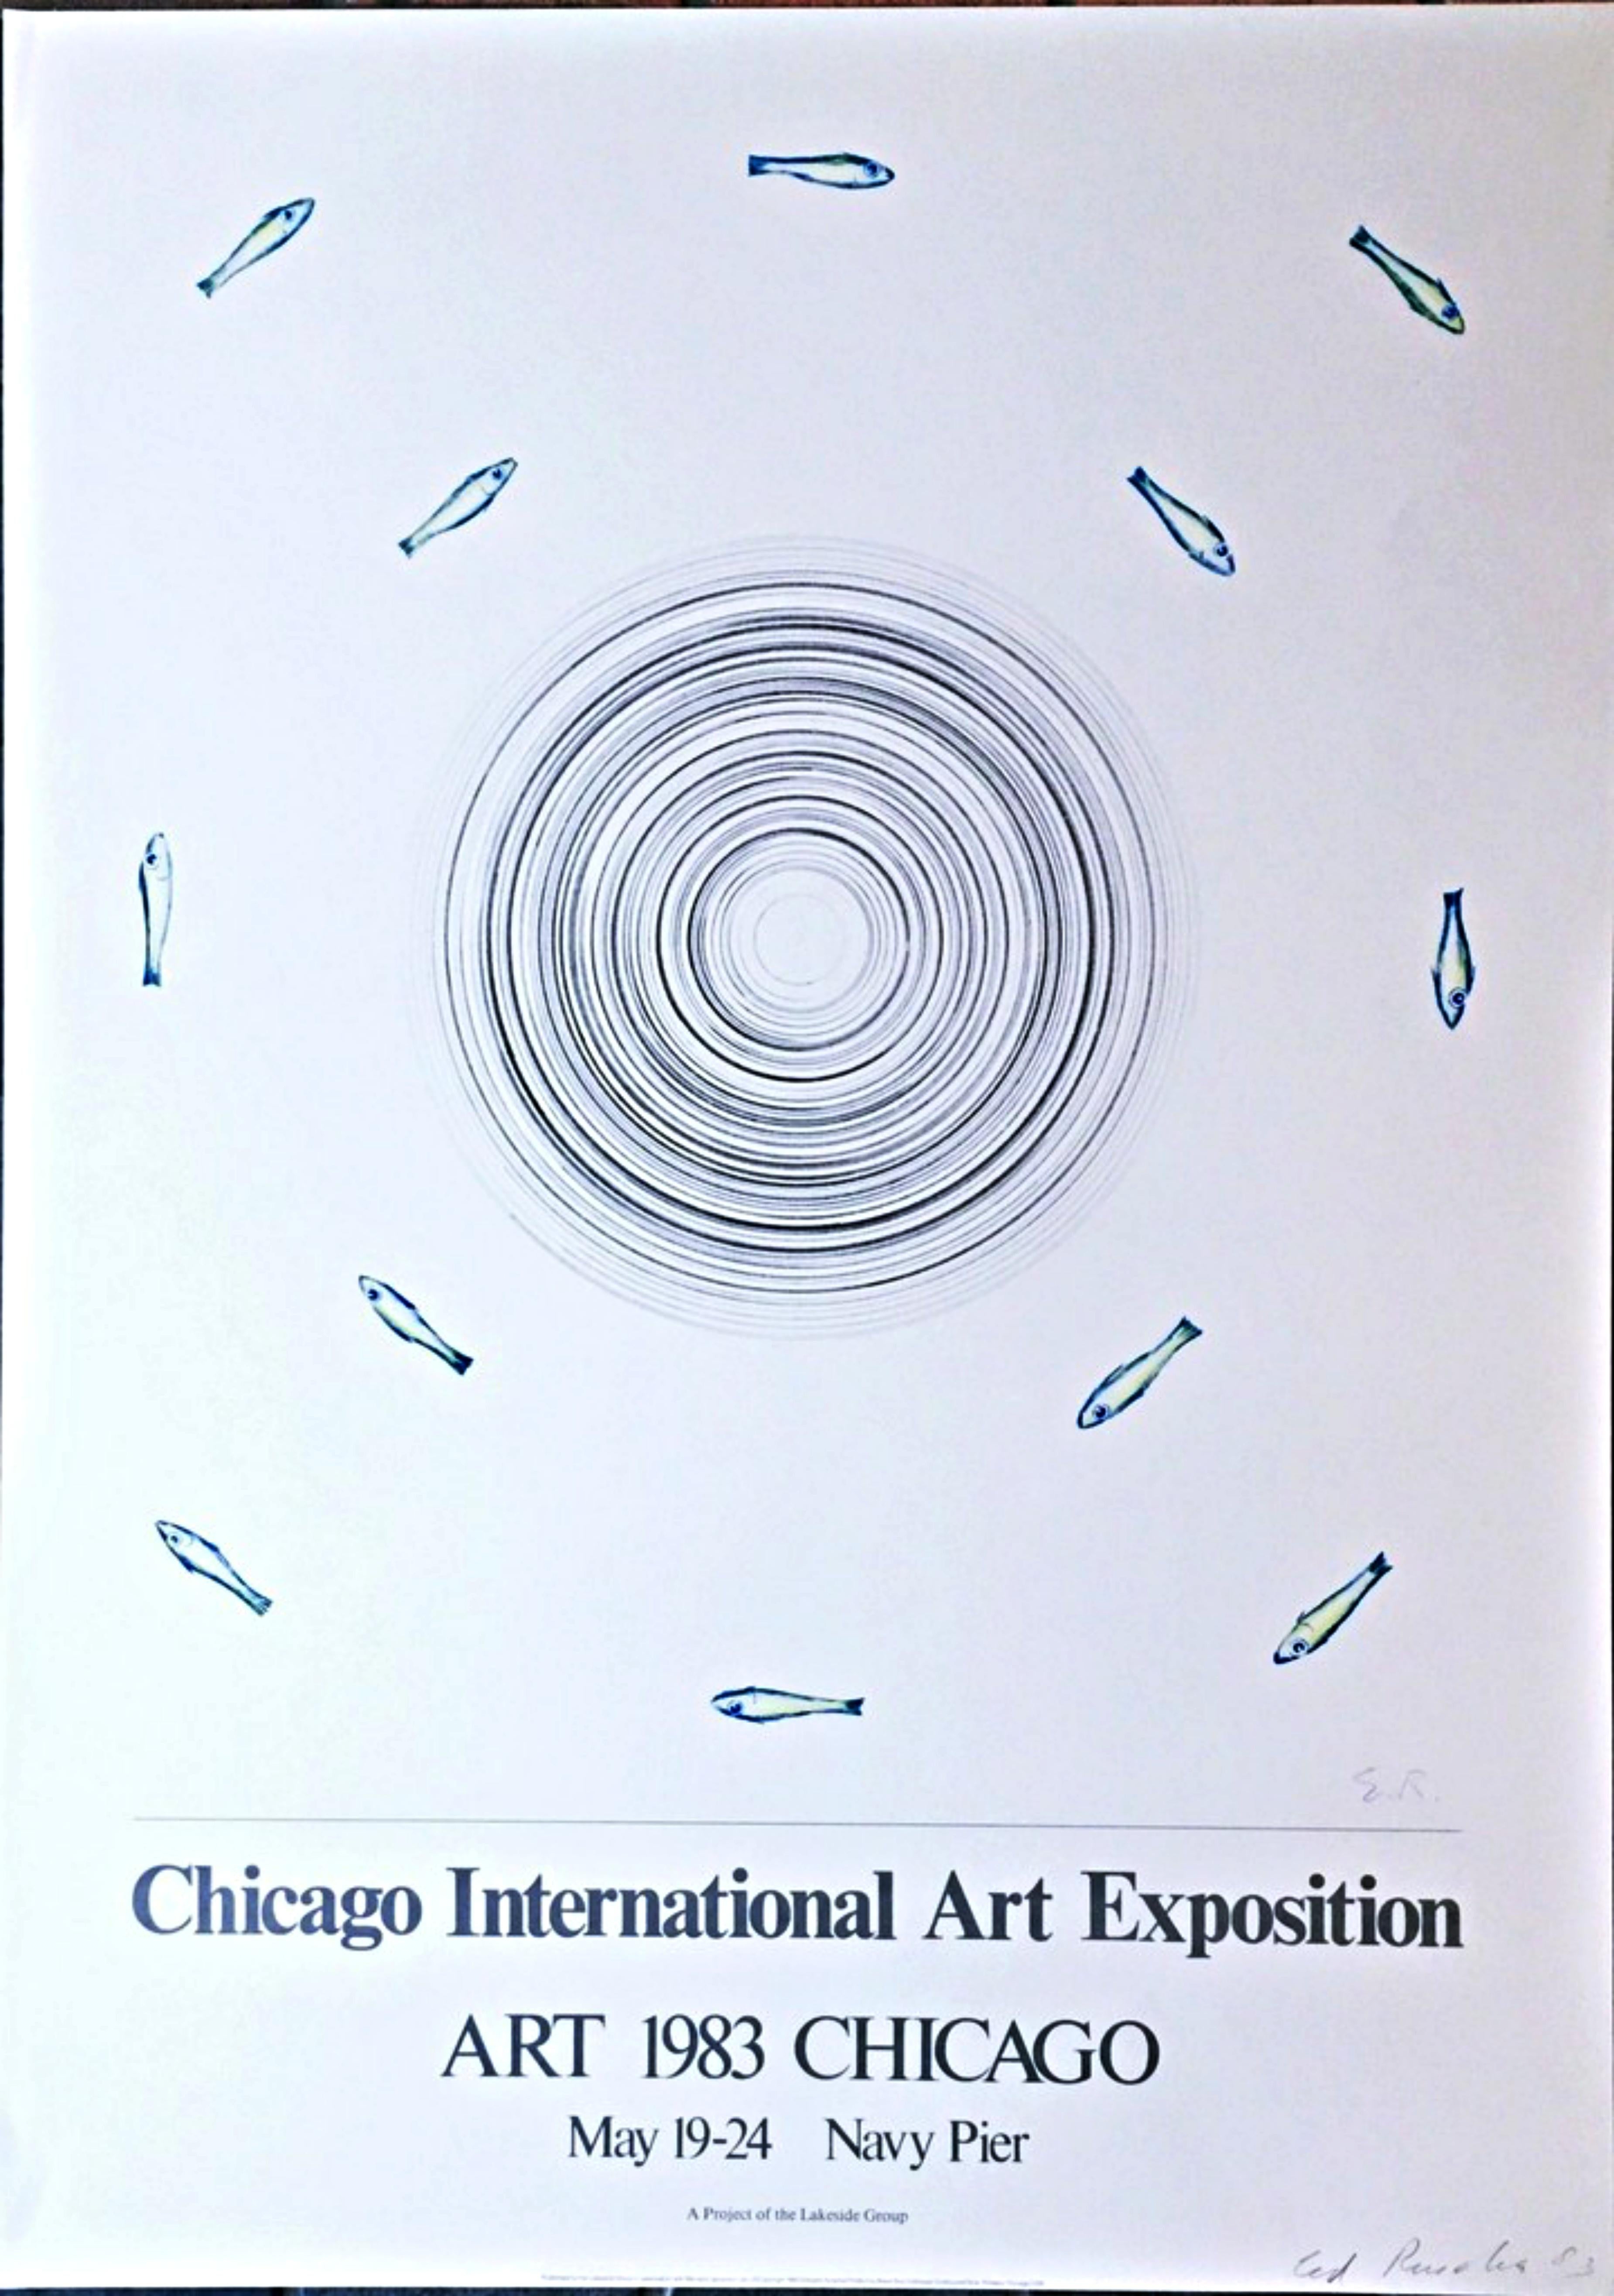 Ed Ruscha
Exposition internationale d'art de Chicago (signée à la main par Ed Ruscha), 1983
Lithographie offset. Crayon Signé et daté. Non encadré.
Signée et datée par Ed Ruscha au crayon graphite en bas à droite.
39 × 27 1/2 pouces
Non